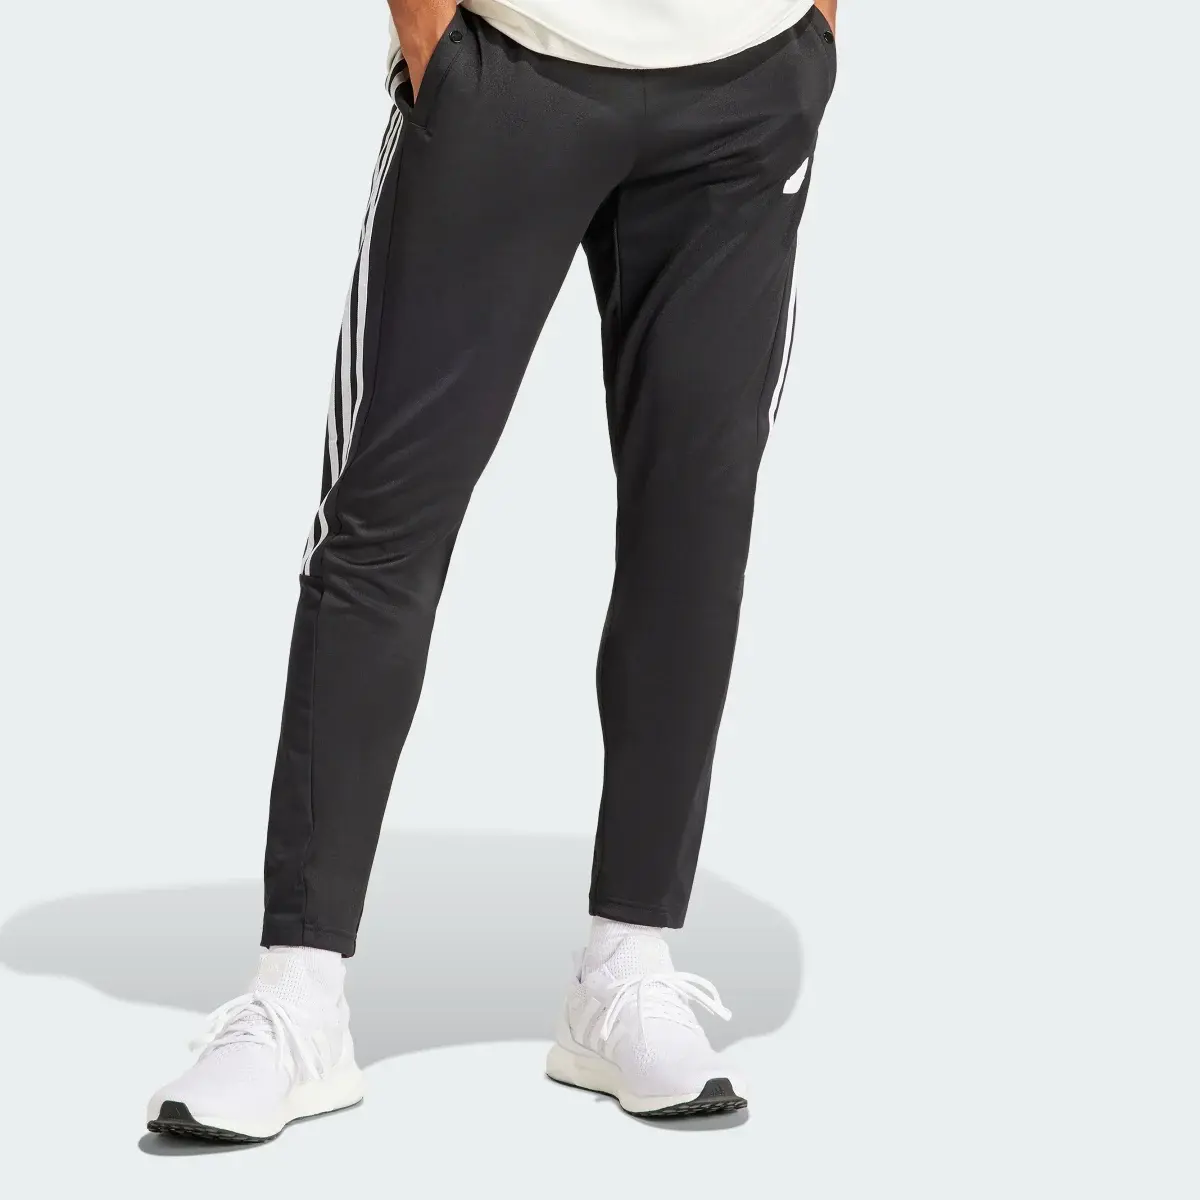 Adidas Tiro Material Mix Pants. 1